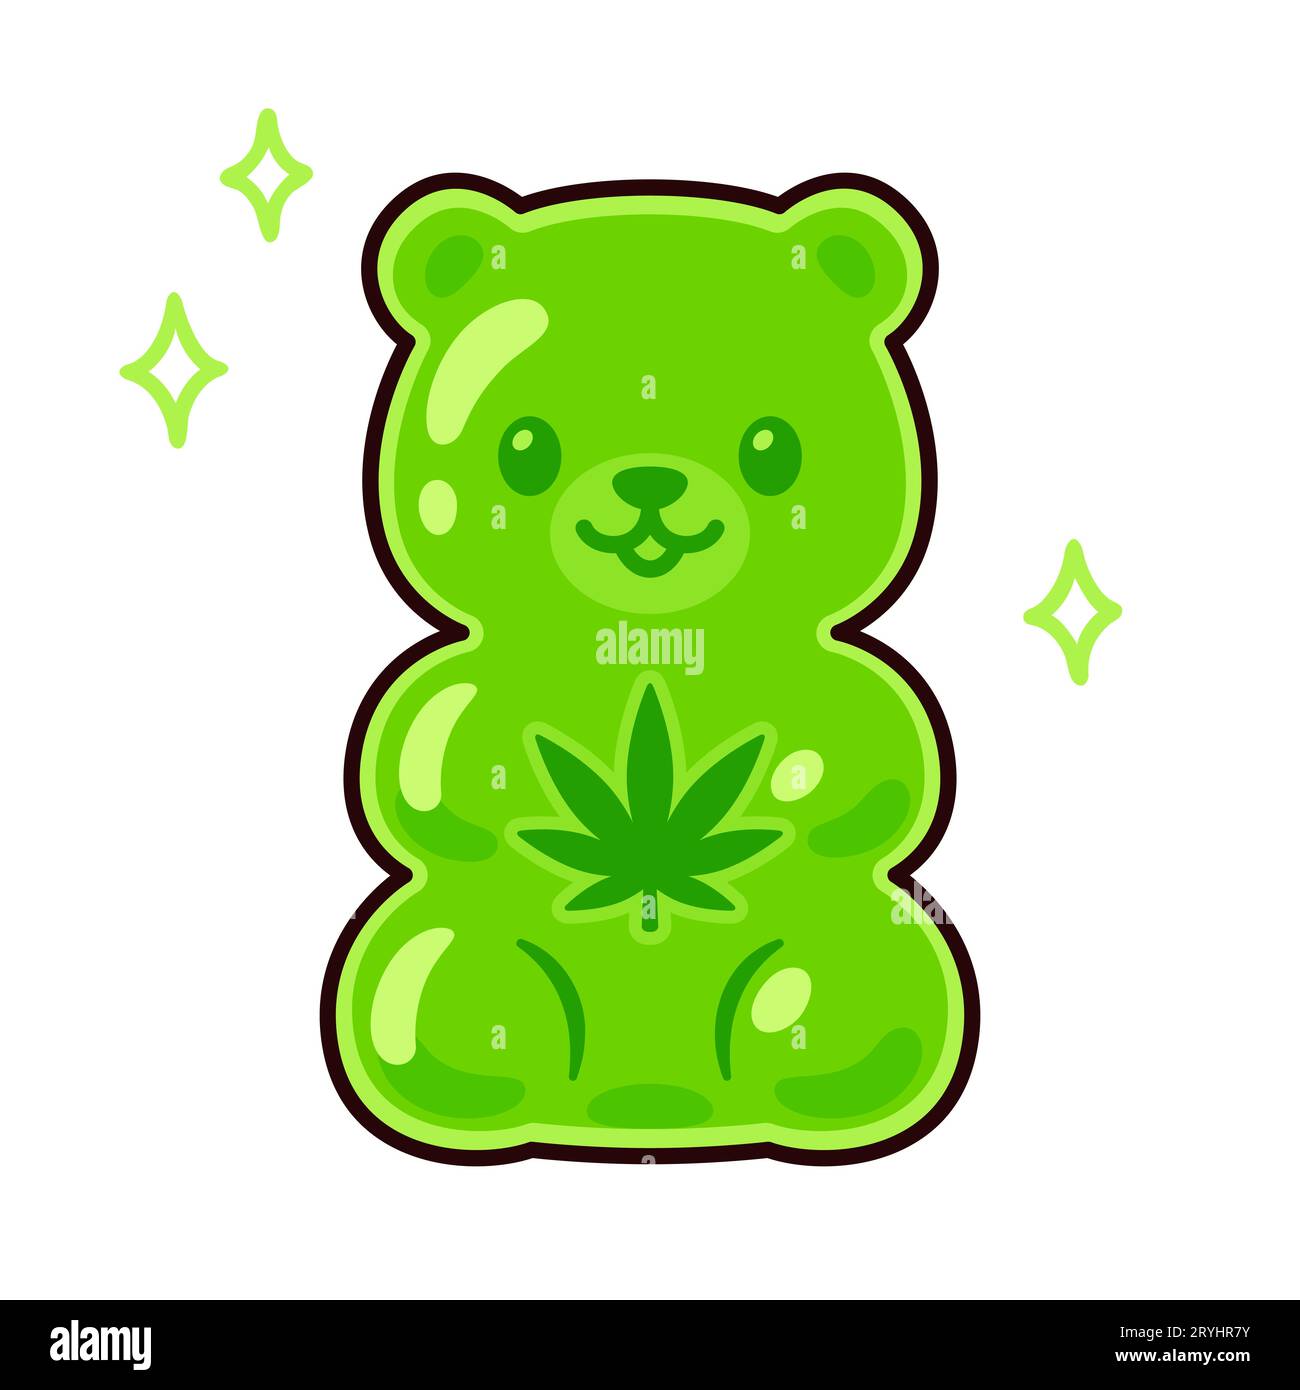 Niedliche Karikatur CBD essbare Gummibärenzeichnung. Grüne Süßigkeit mit Cannabisblattform. Vektor-Clip-Art-Illustration. Stock Vektor